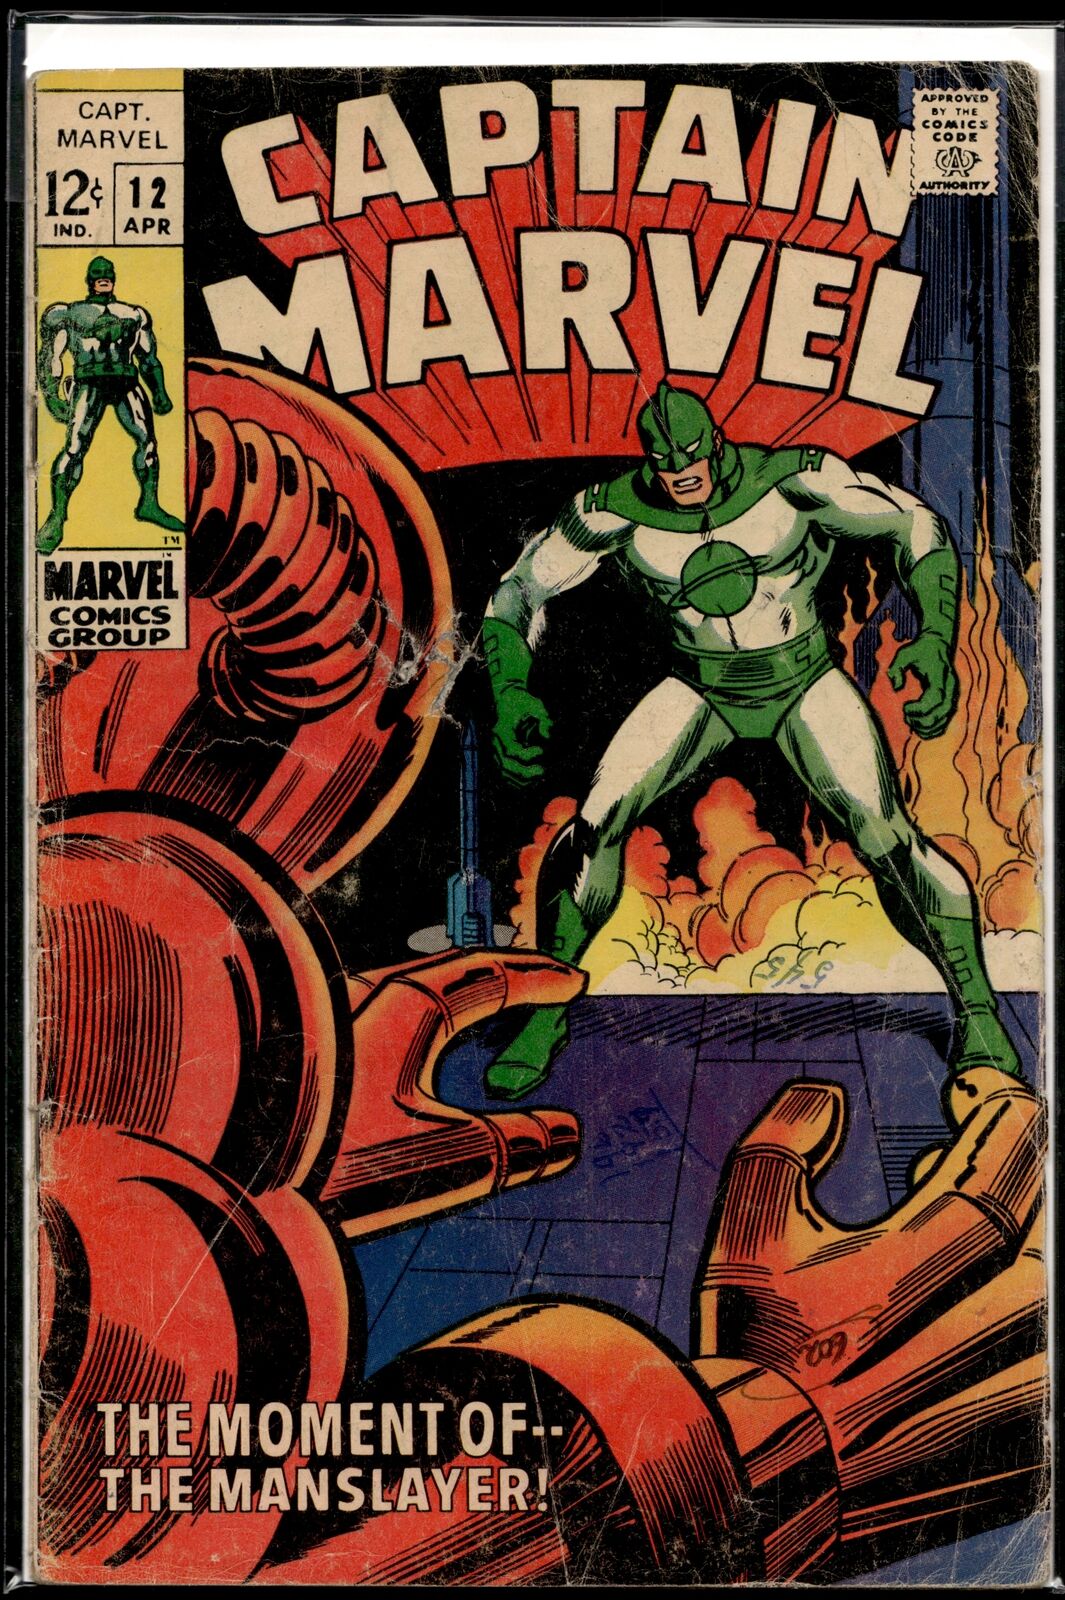 1969 Captain Marvel #12 Marvel Comic